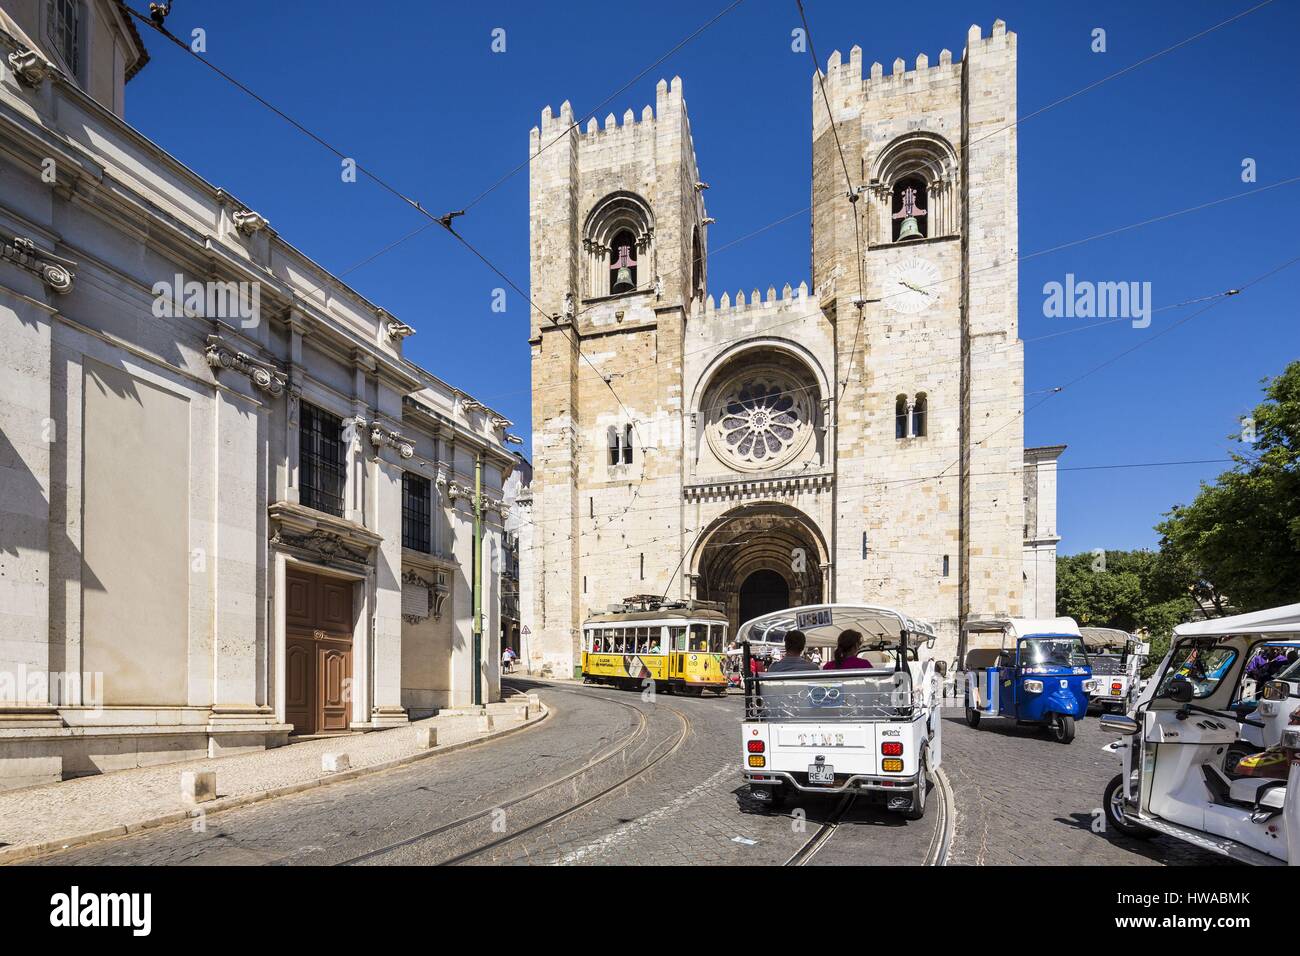 Portugal, Lisbonne, district d'Alfama, le tramway et les tuk tuk le long du Largo da Sé et cathédrale Santa Maria Maior ou Cathédrale Se Patriarcal Banque D'Images